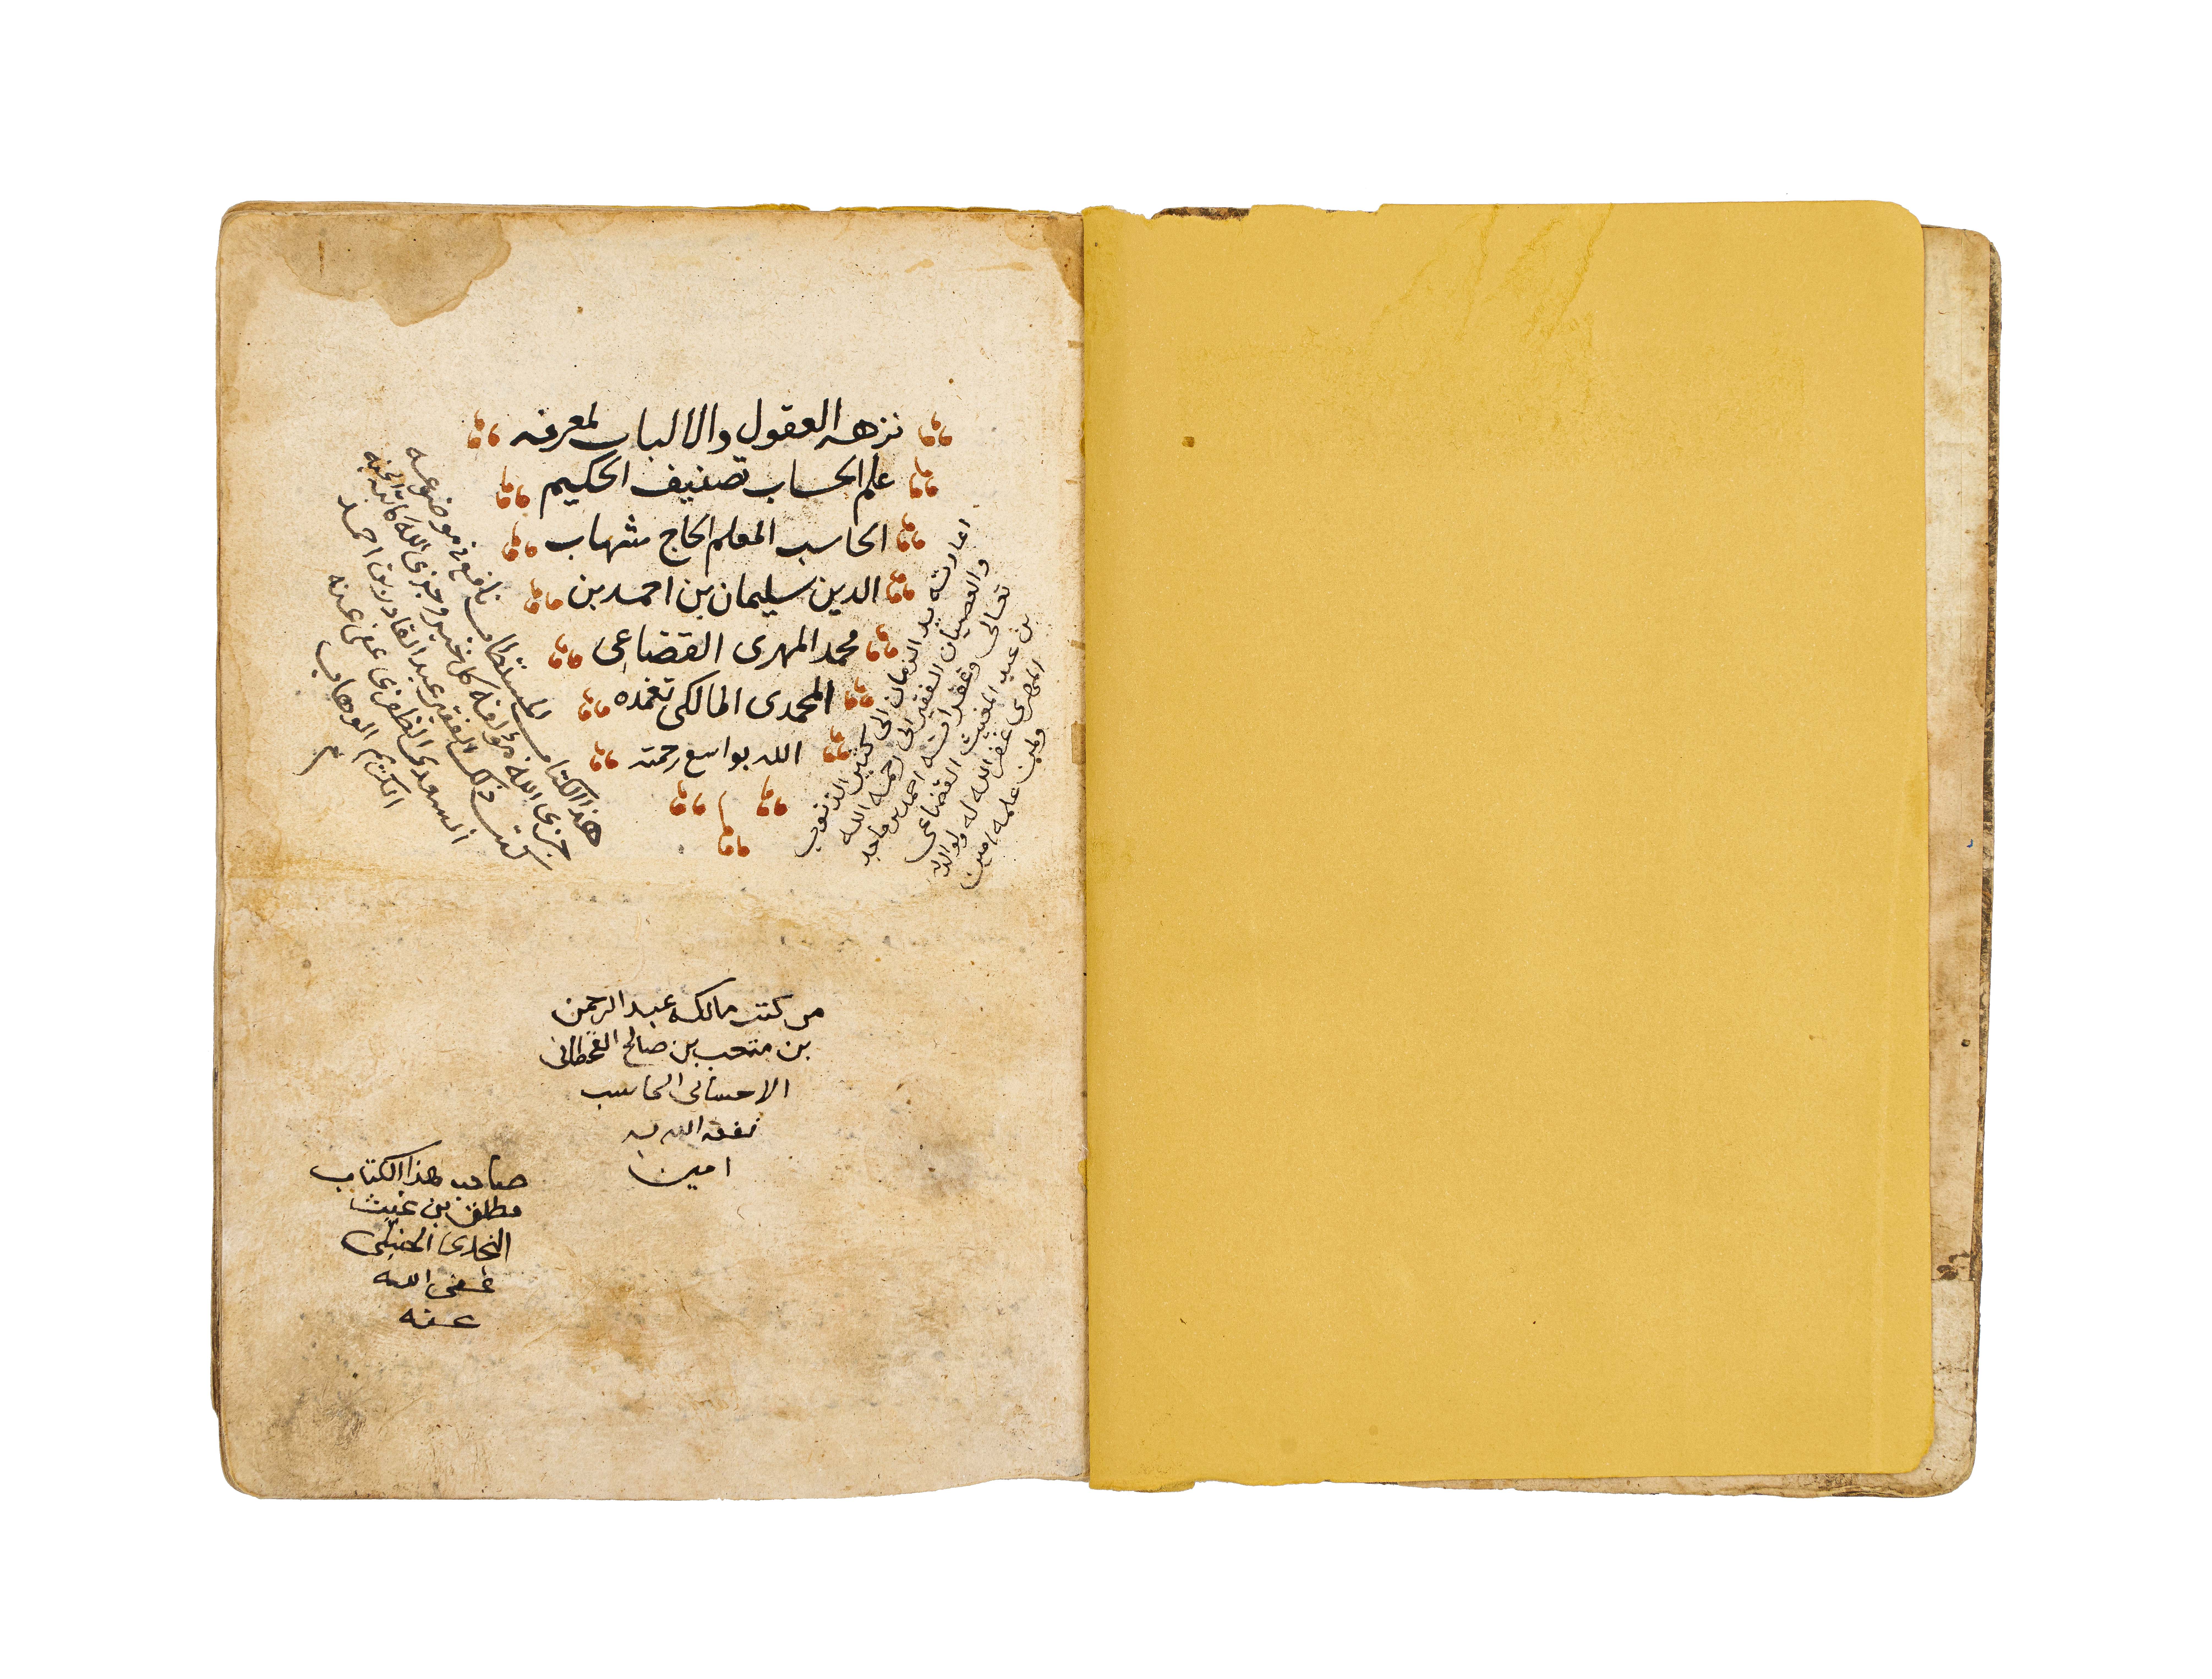 NUZHAT ALEUQUL WA- ALBAB LI MARIFAT AL-HISAB, COPIED BY BARAK BIN MATALK AL-RASHDI IN 1250AH - Image 2 of 7